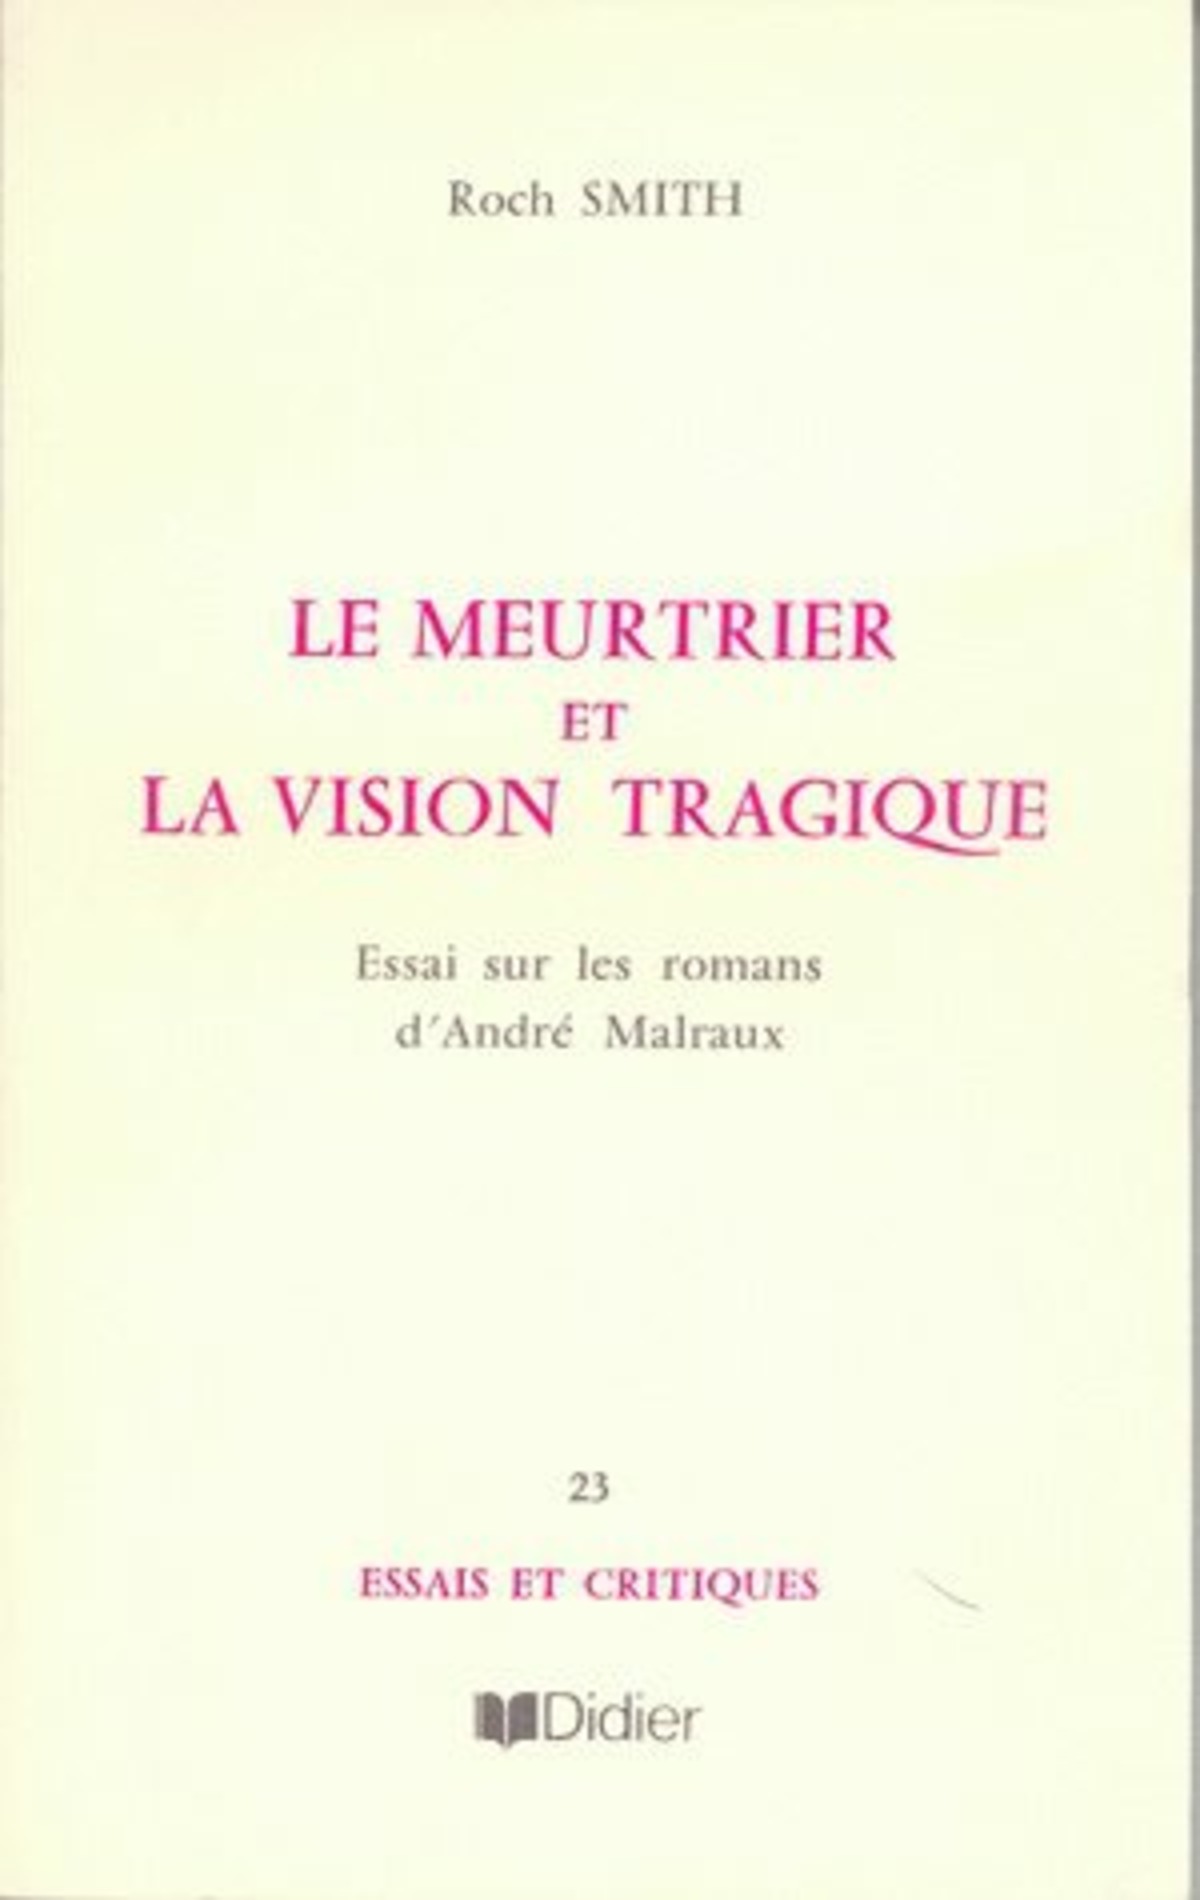 Le Meurtrier et la vision tragique dans les romans de Malraux